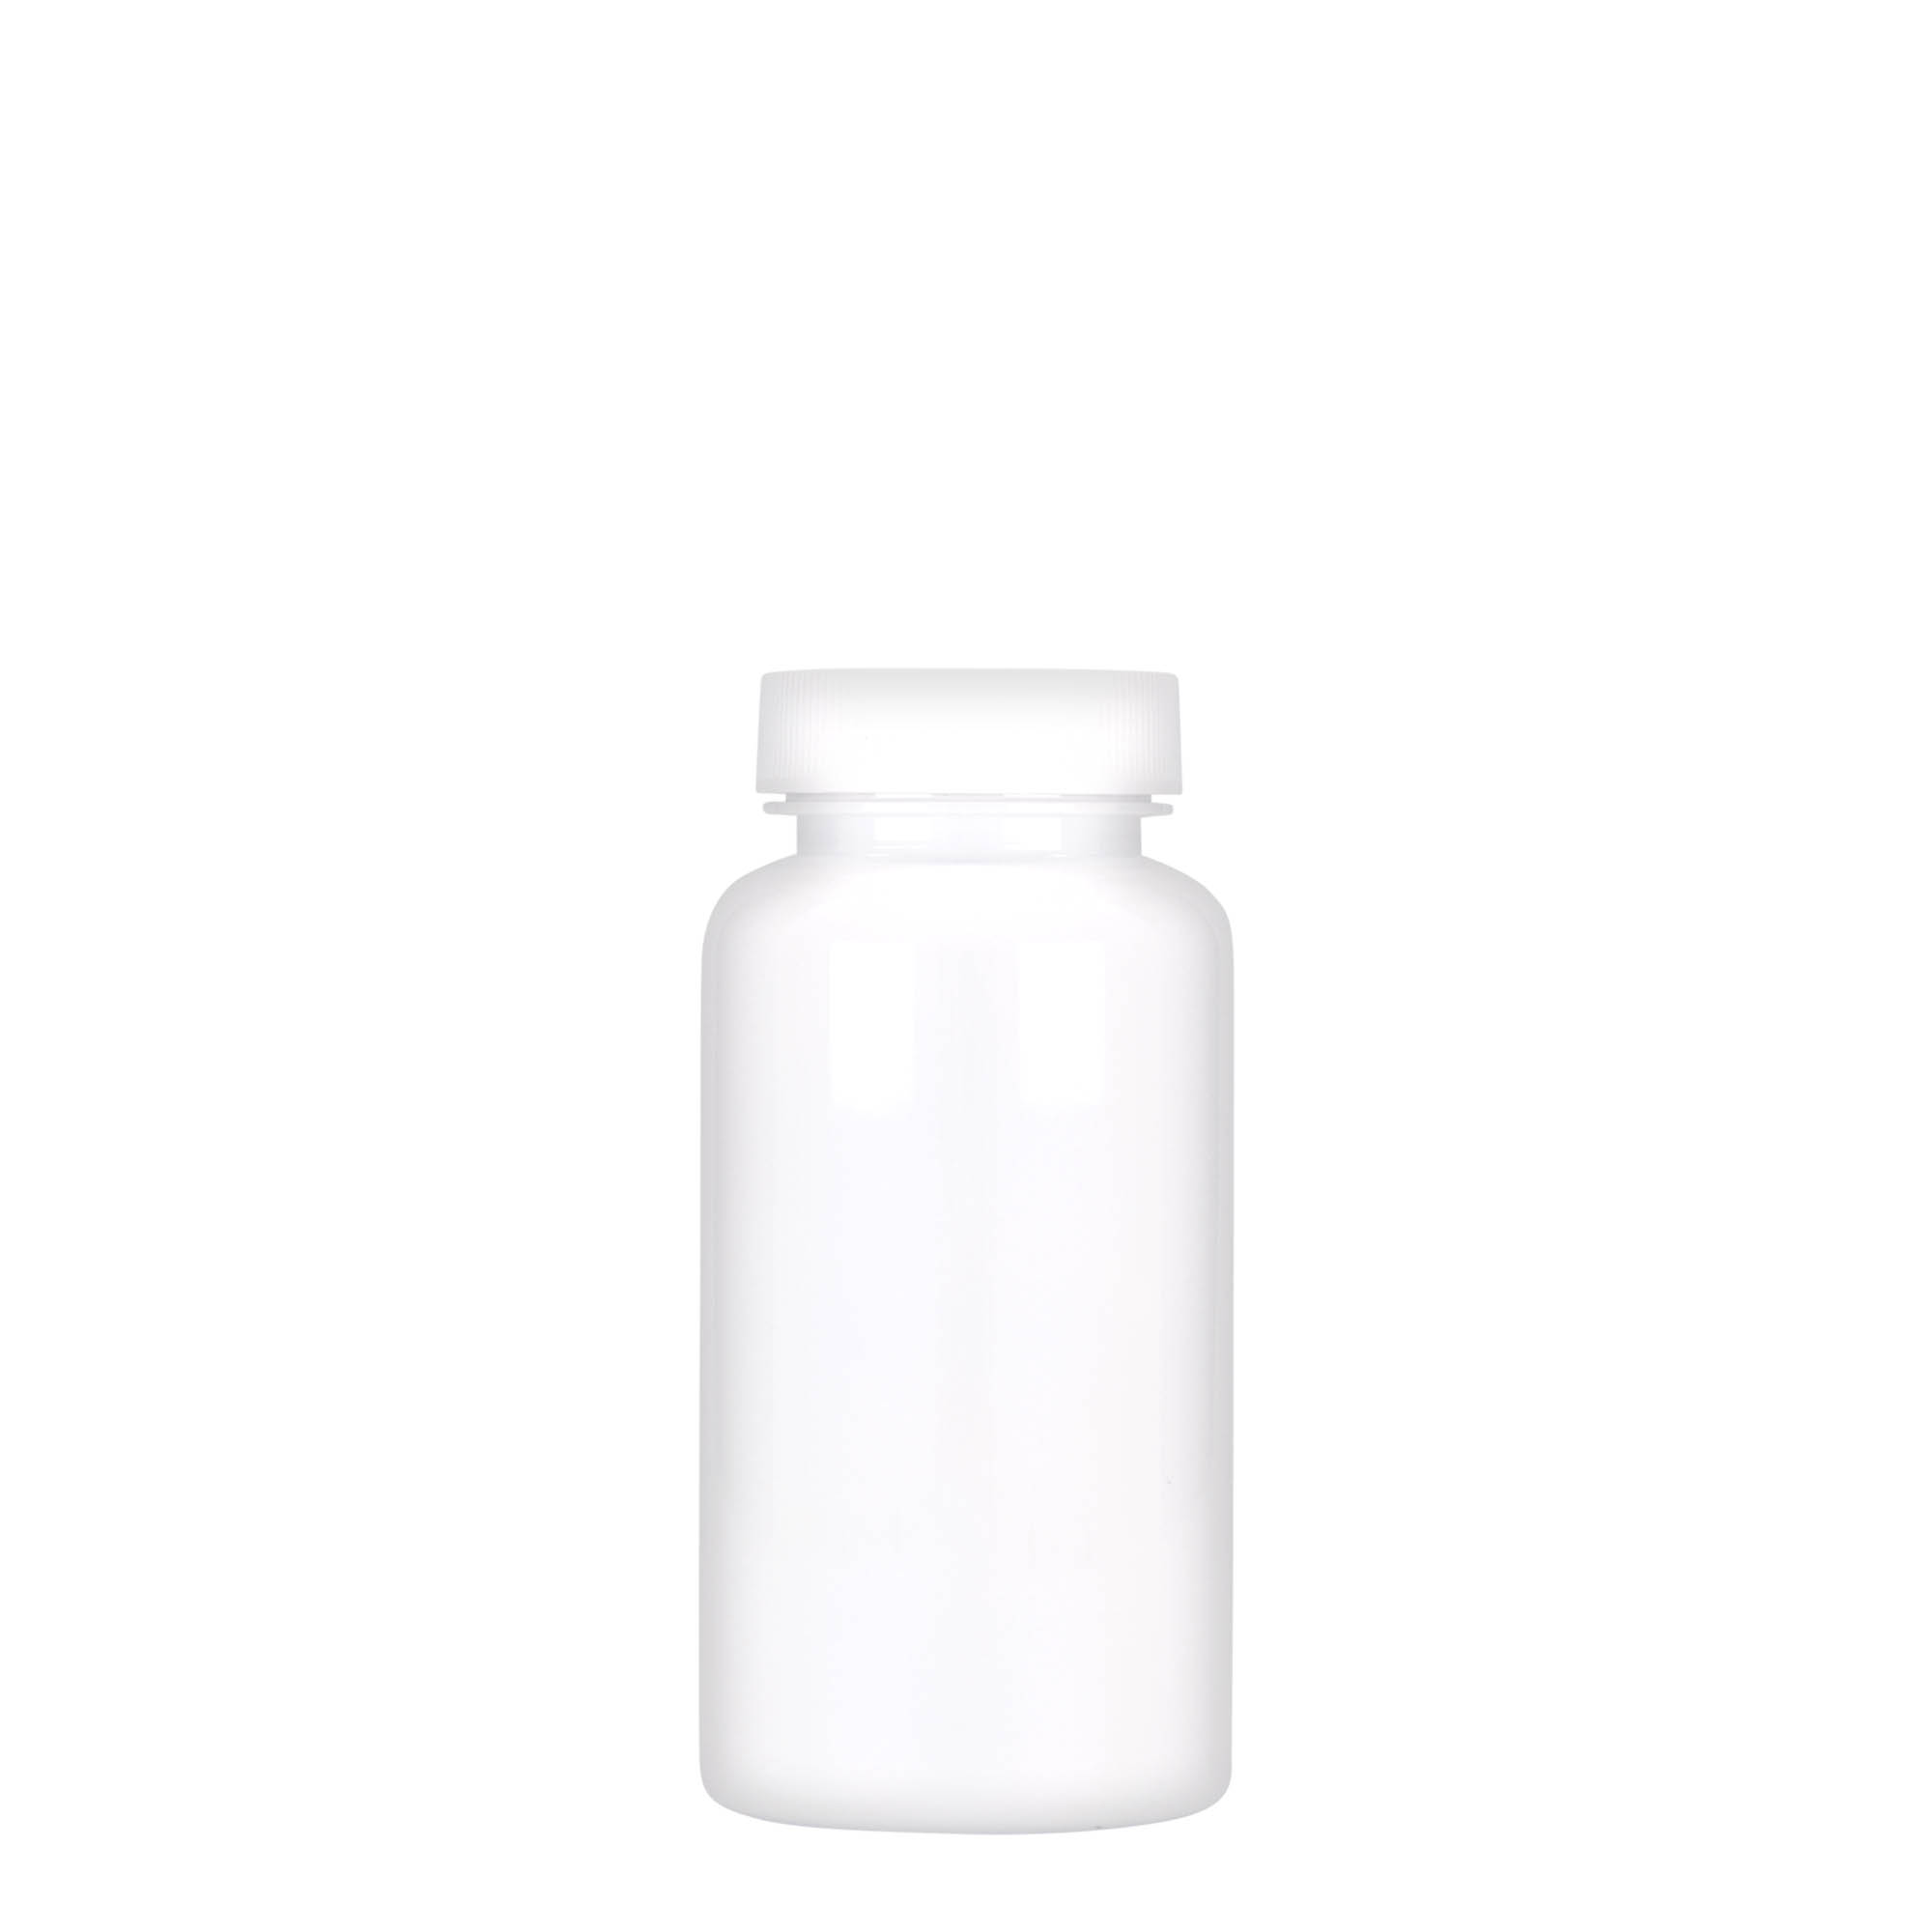 150 ml PET packer, plastic, white, closure: GPI 38/400